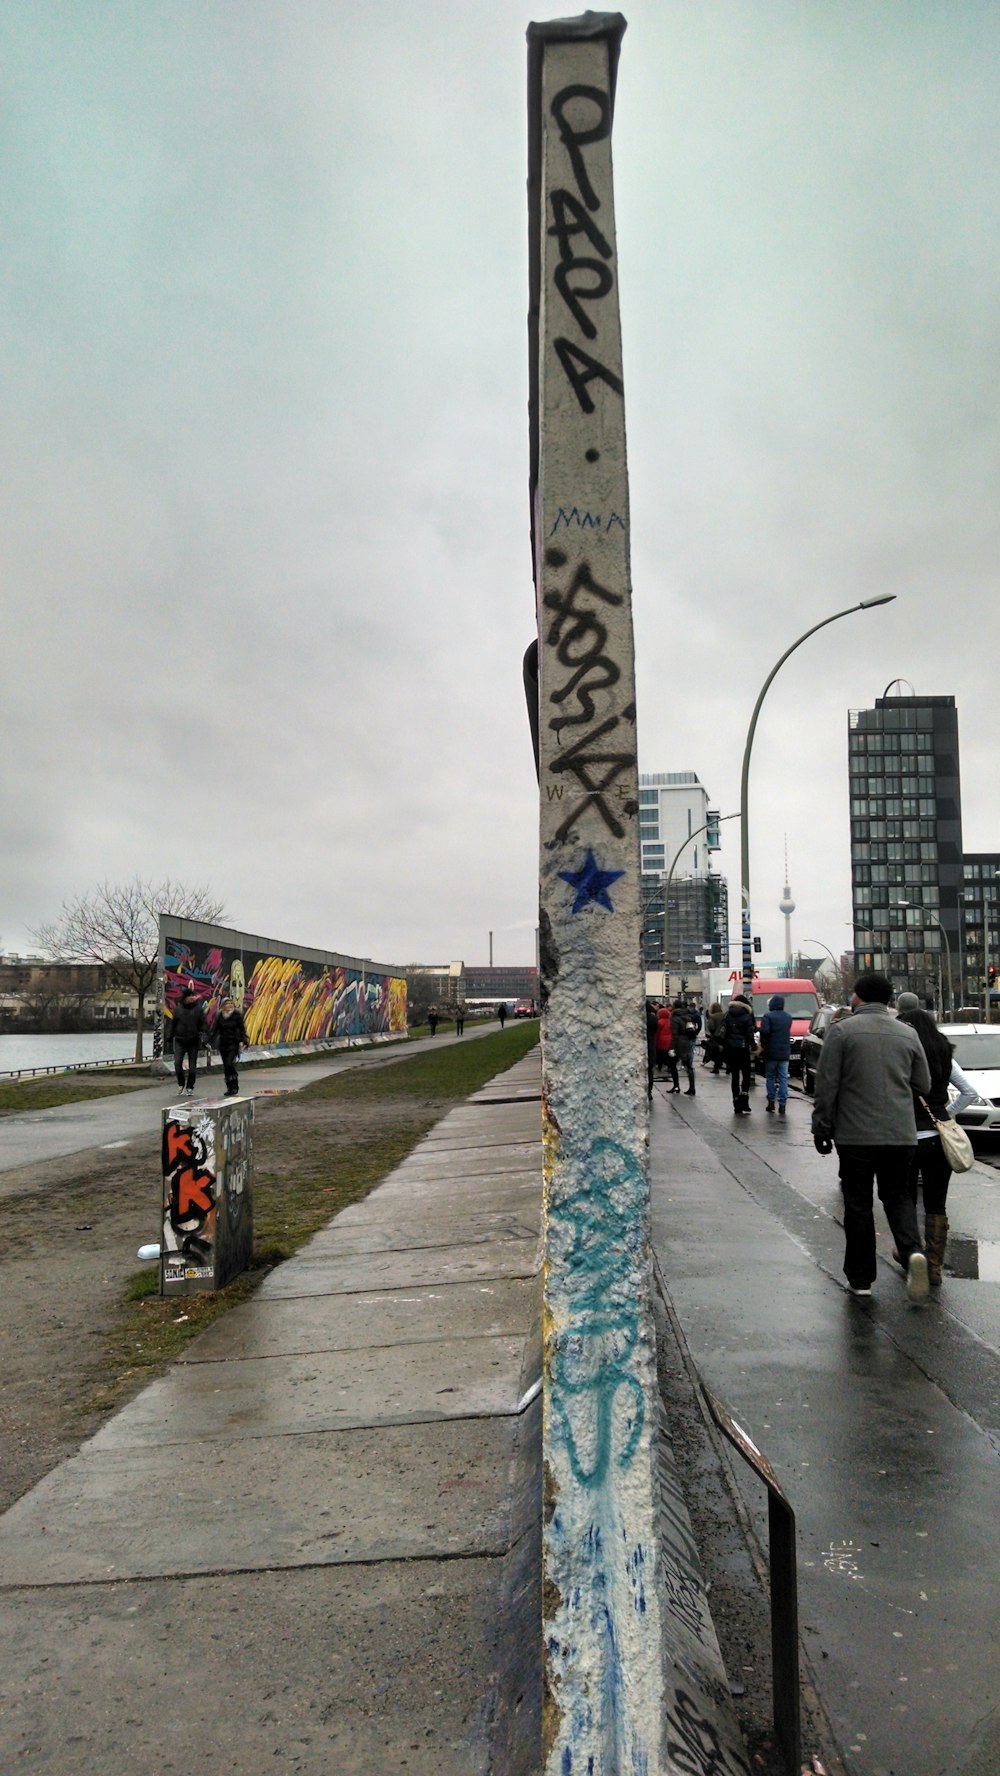 a pole with graffiti on it on a sidewalk